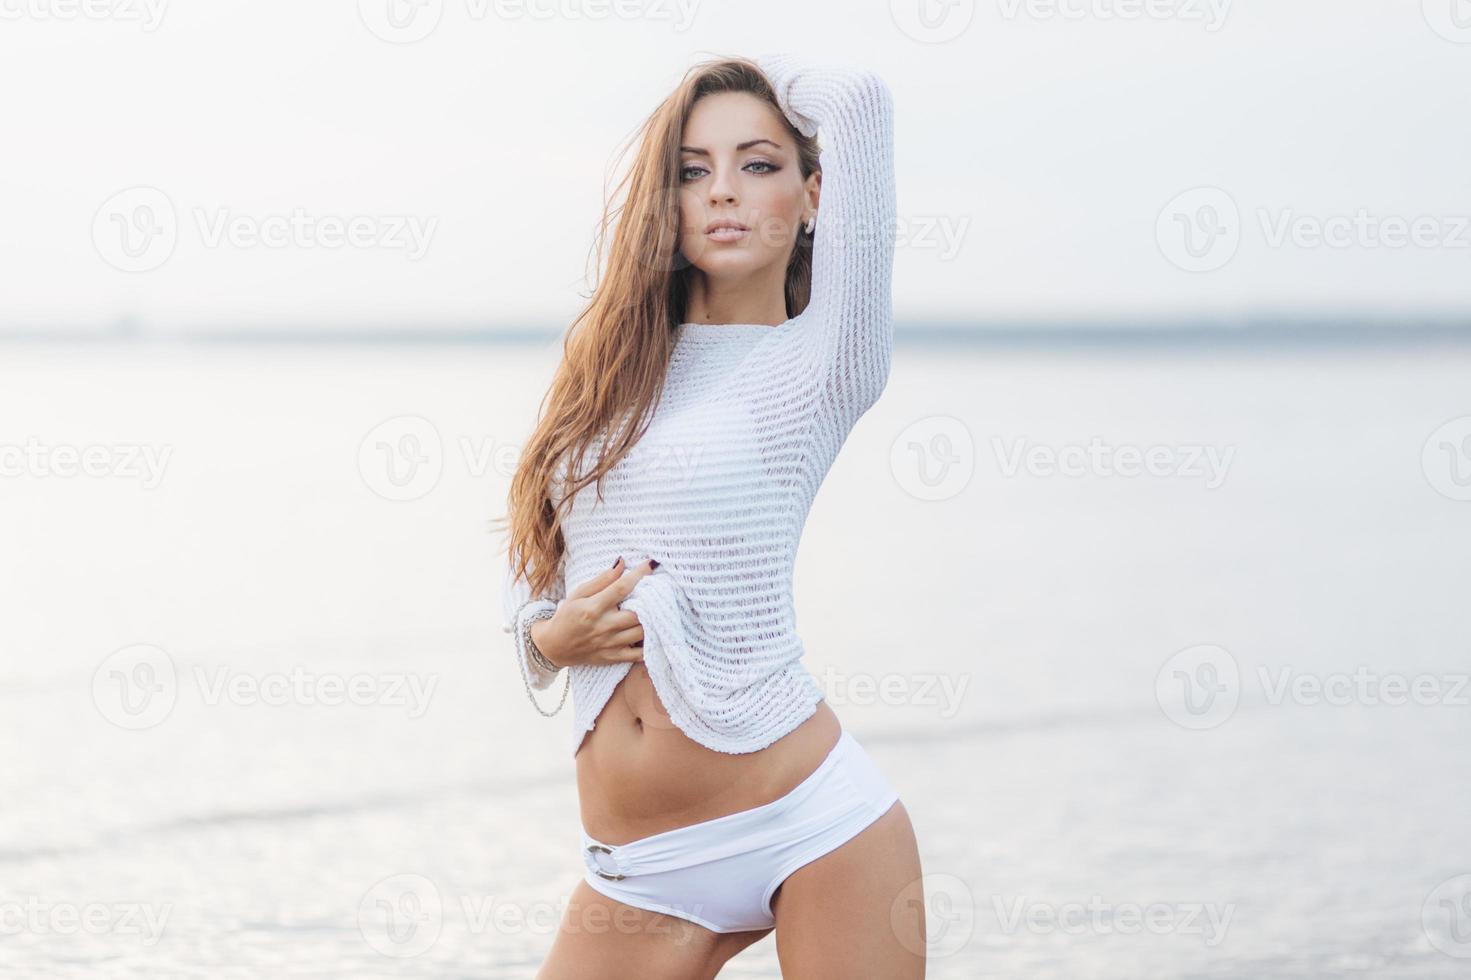 foto van schattig jong vrouw met lang haar, aangenaam uiterlijk, shows haar slank buik, draagt wit trui, poses tegen mooi zee achtergrond. mooi schattig vrouw modellen buitenshuis in de buurt oceaan